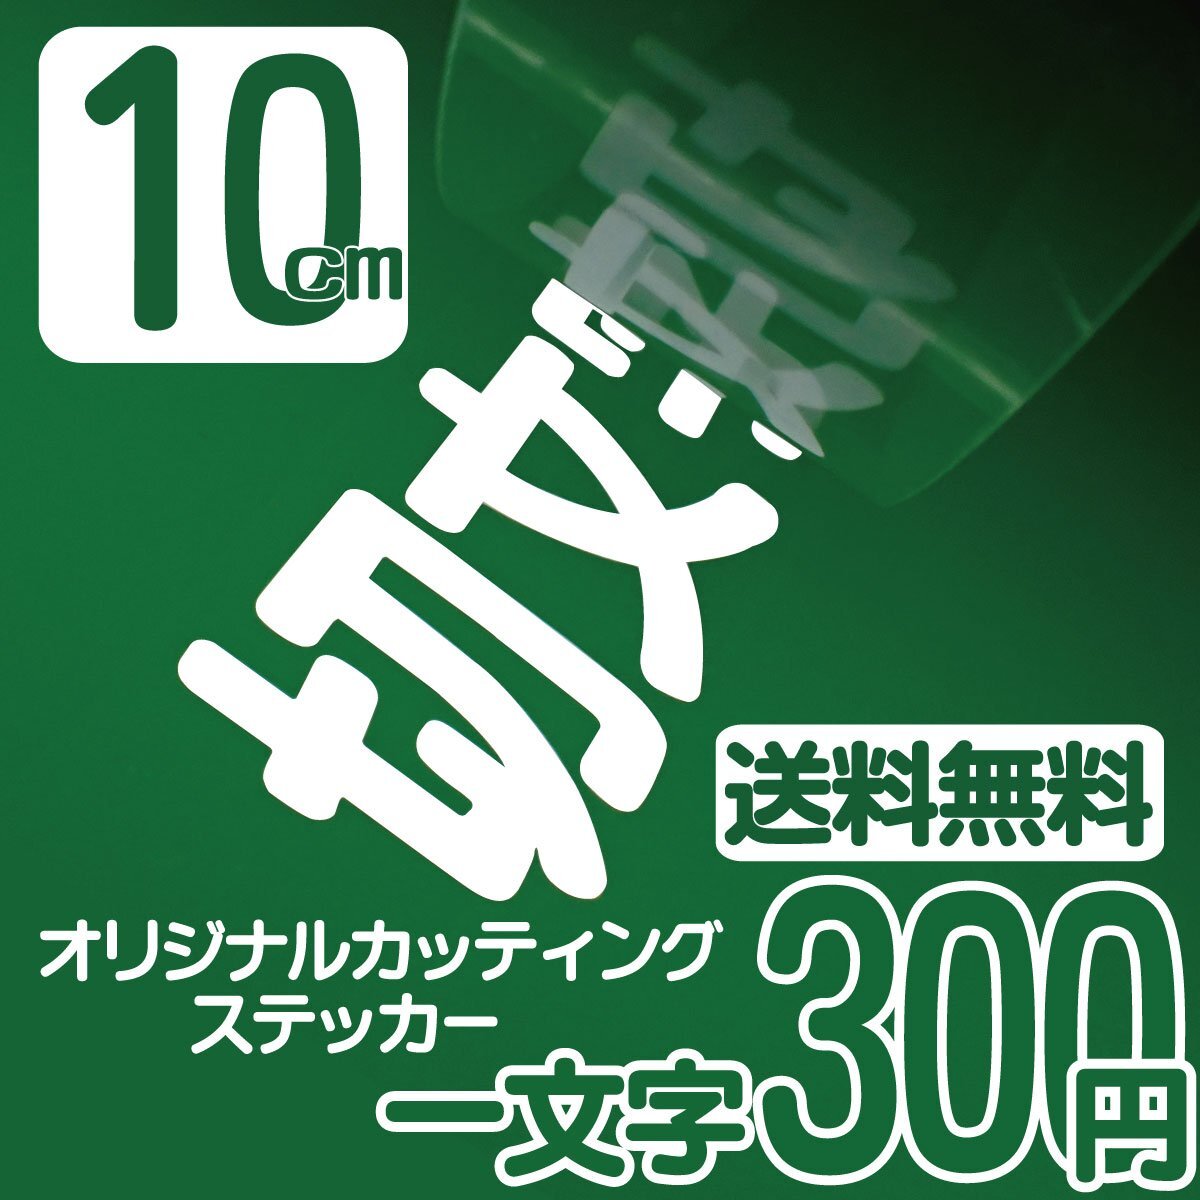 Высота символа наклейка на стикере 10 см на символ 300 иен вырезанный символ Печально